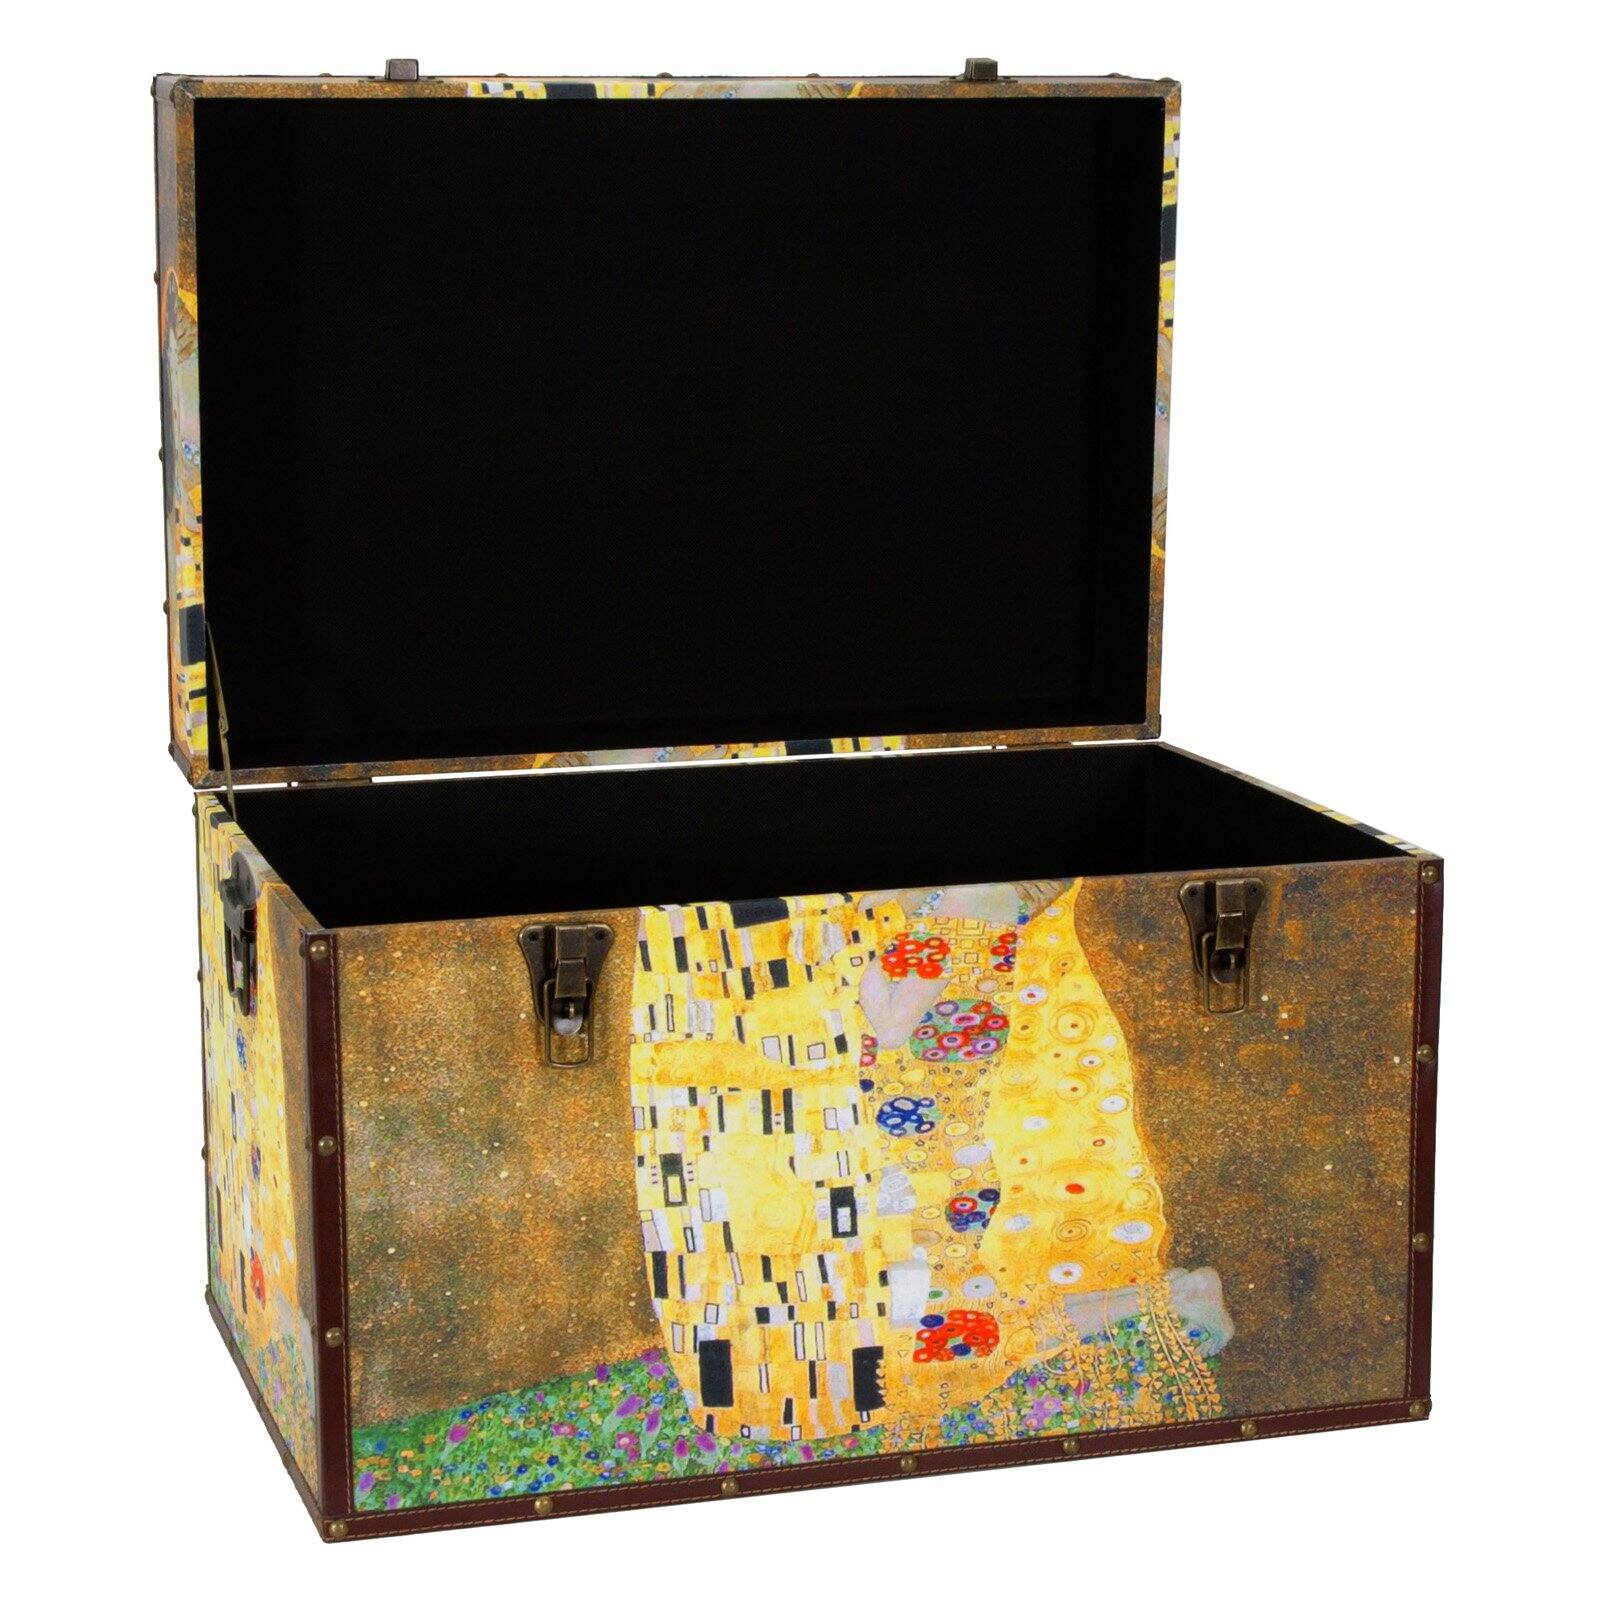 Oriental Furniture Works of Klimt Trunk - image 4 of 4